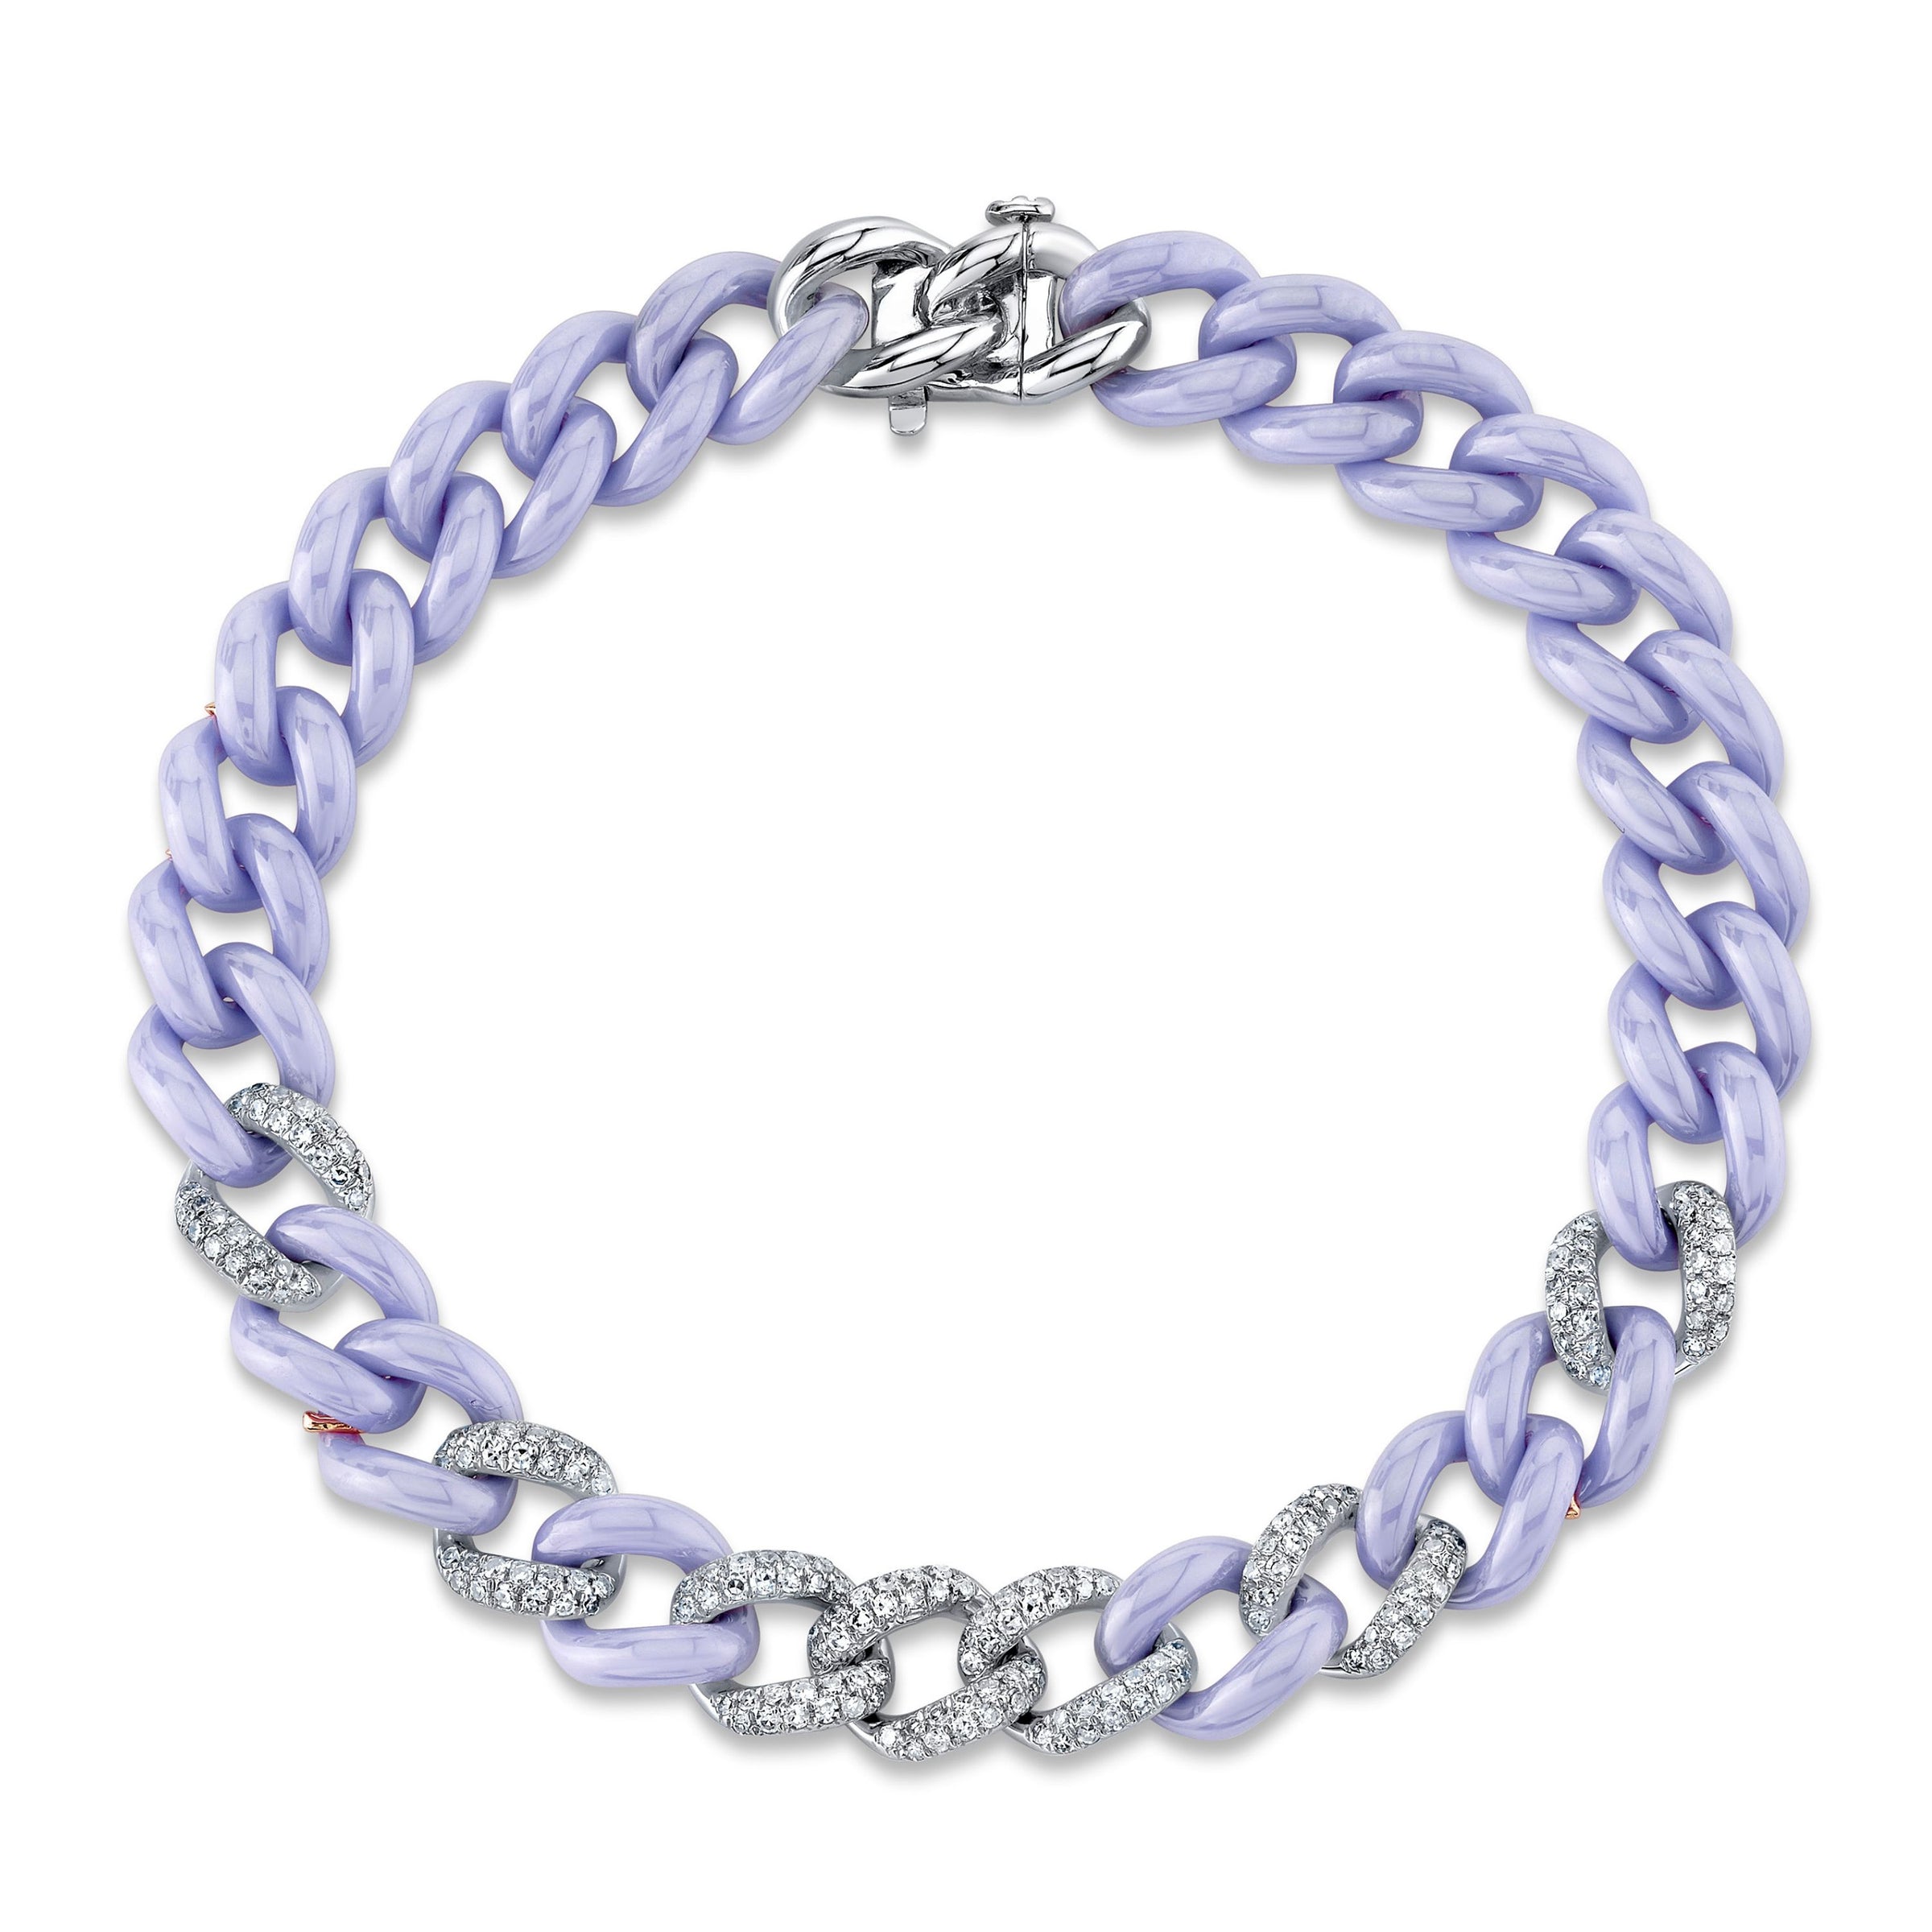 Louis Vuitton Cuban blue diamond bracelet